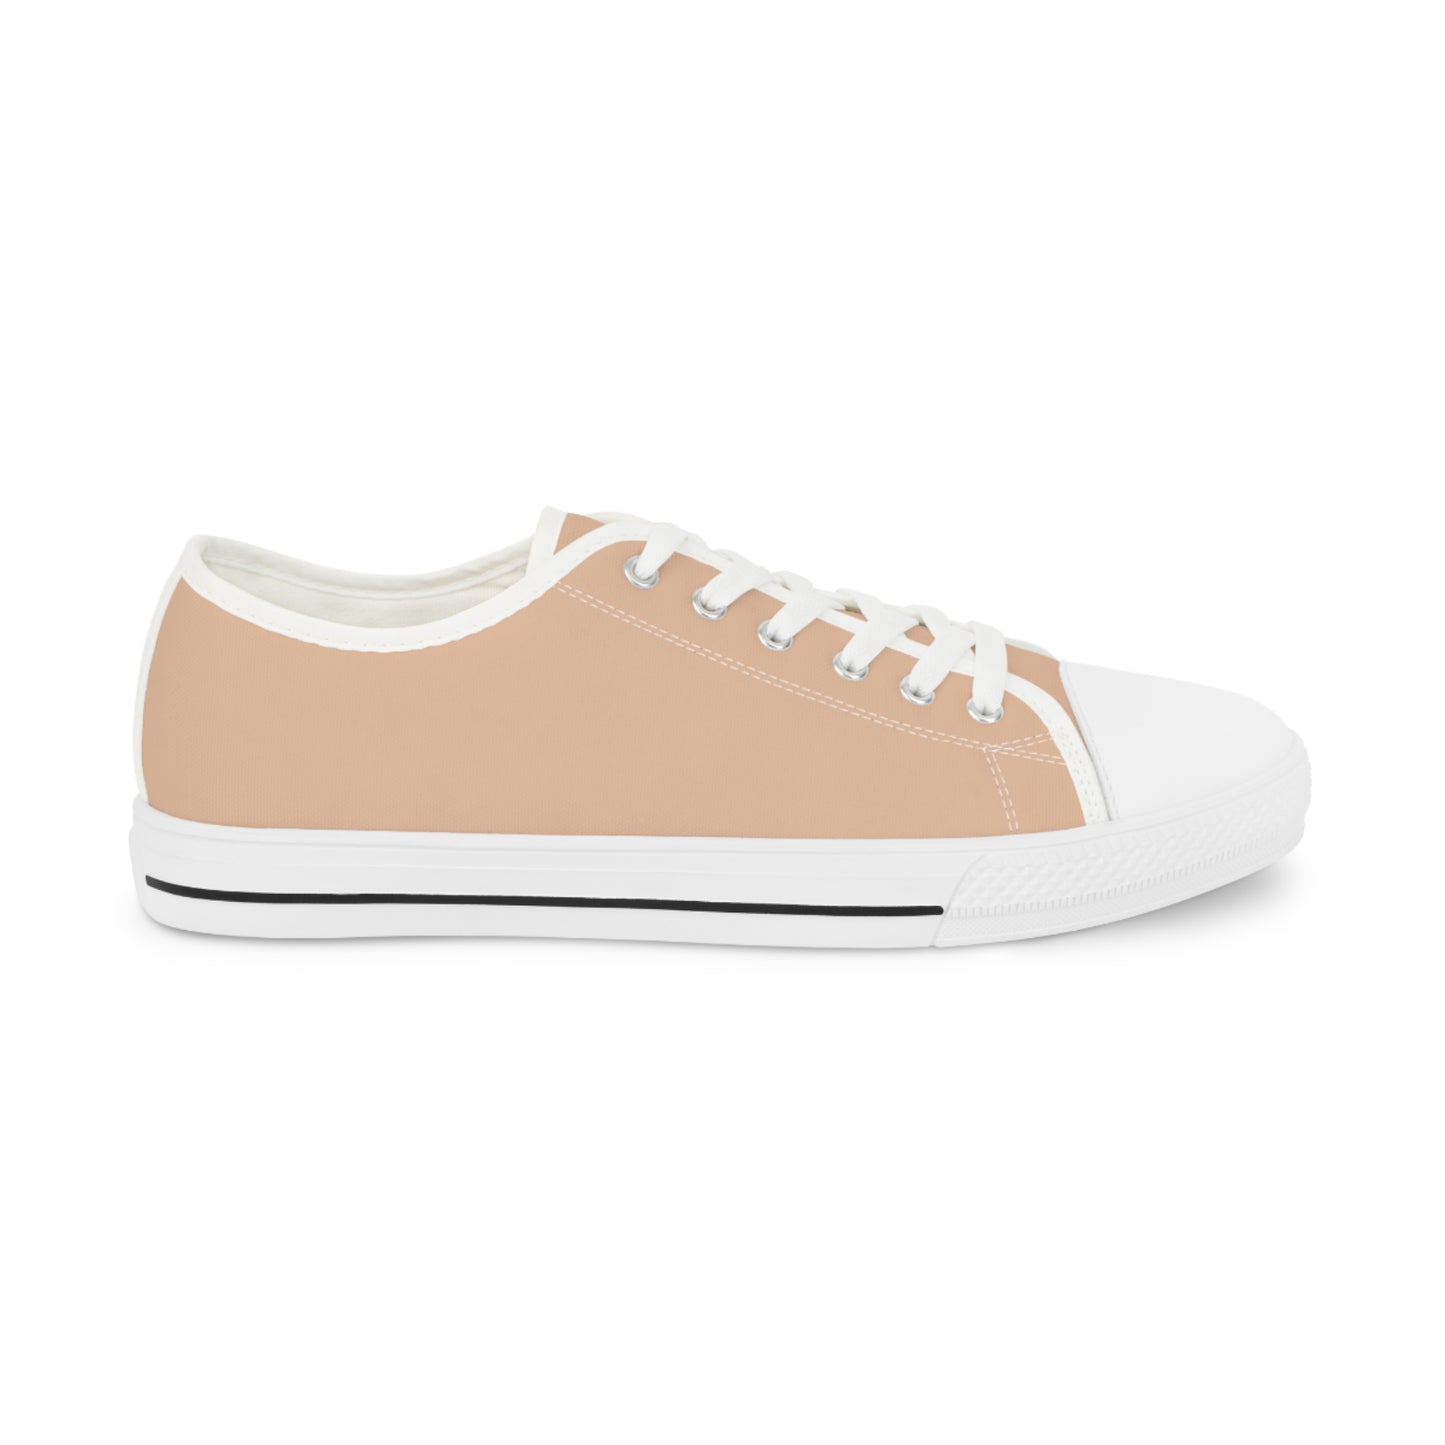 Men's Canvas Low Top Solid Color Sneakers - Orange Cream US 14 Black sole